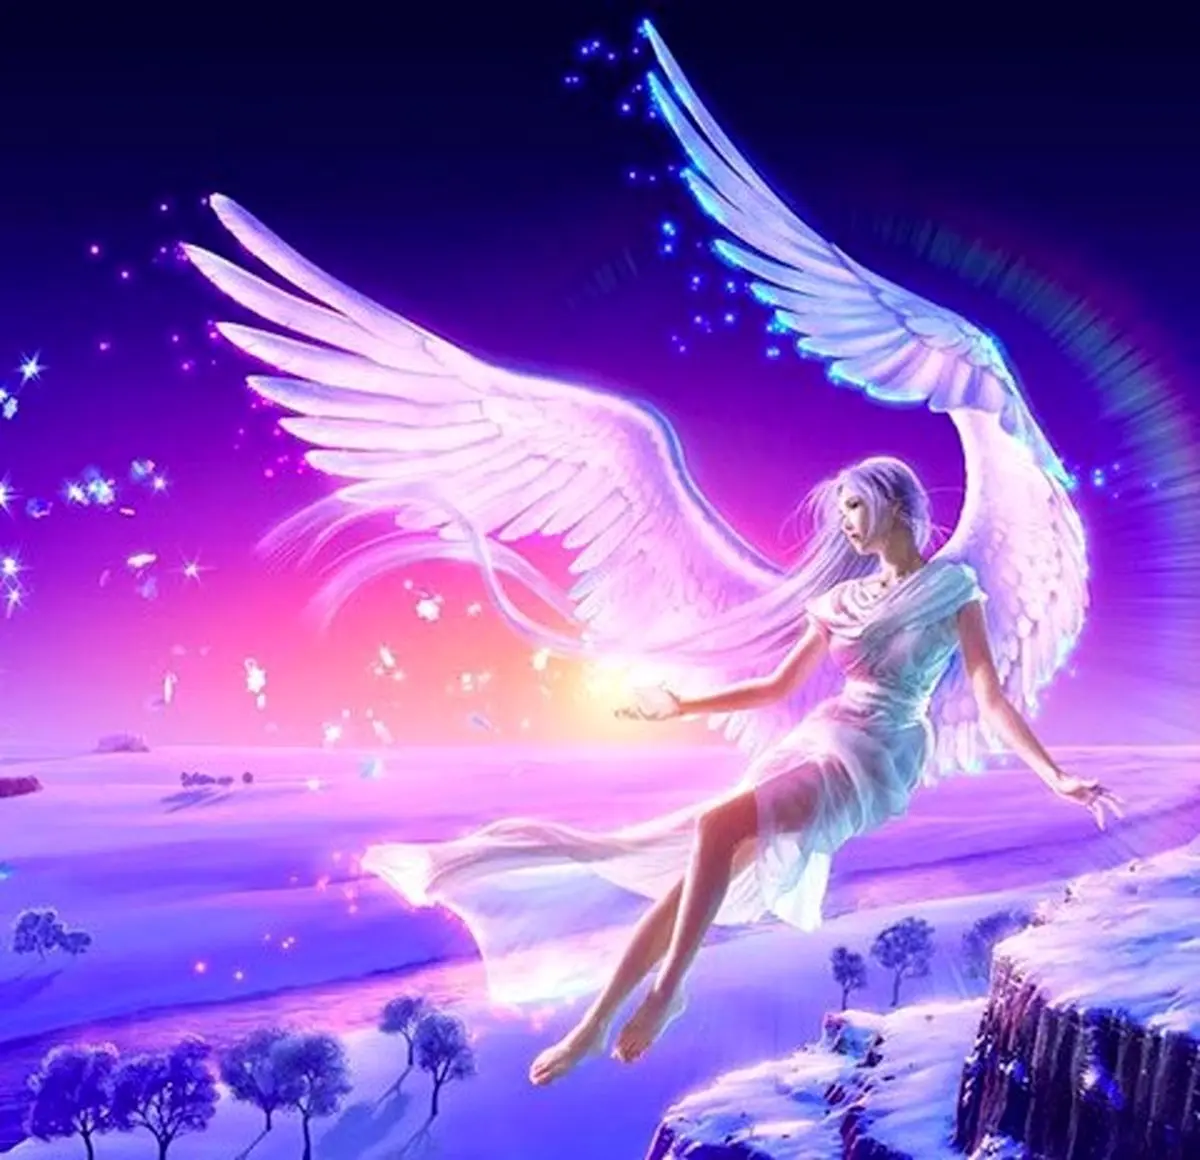 فال فرشتگان 11 مهرماه | فرشتگان برای شما چه پیام مثبتی دارند؟